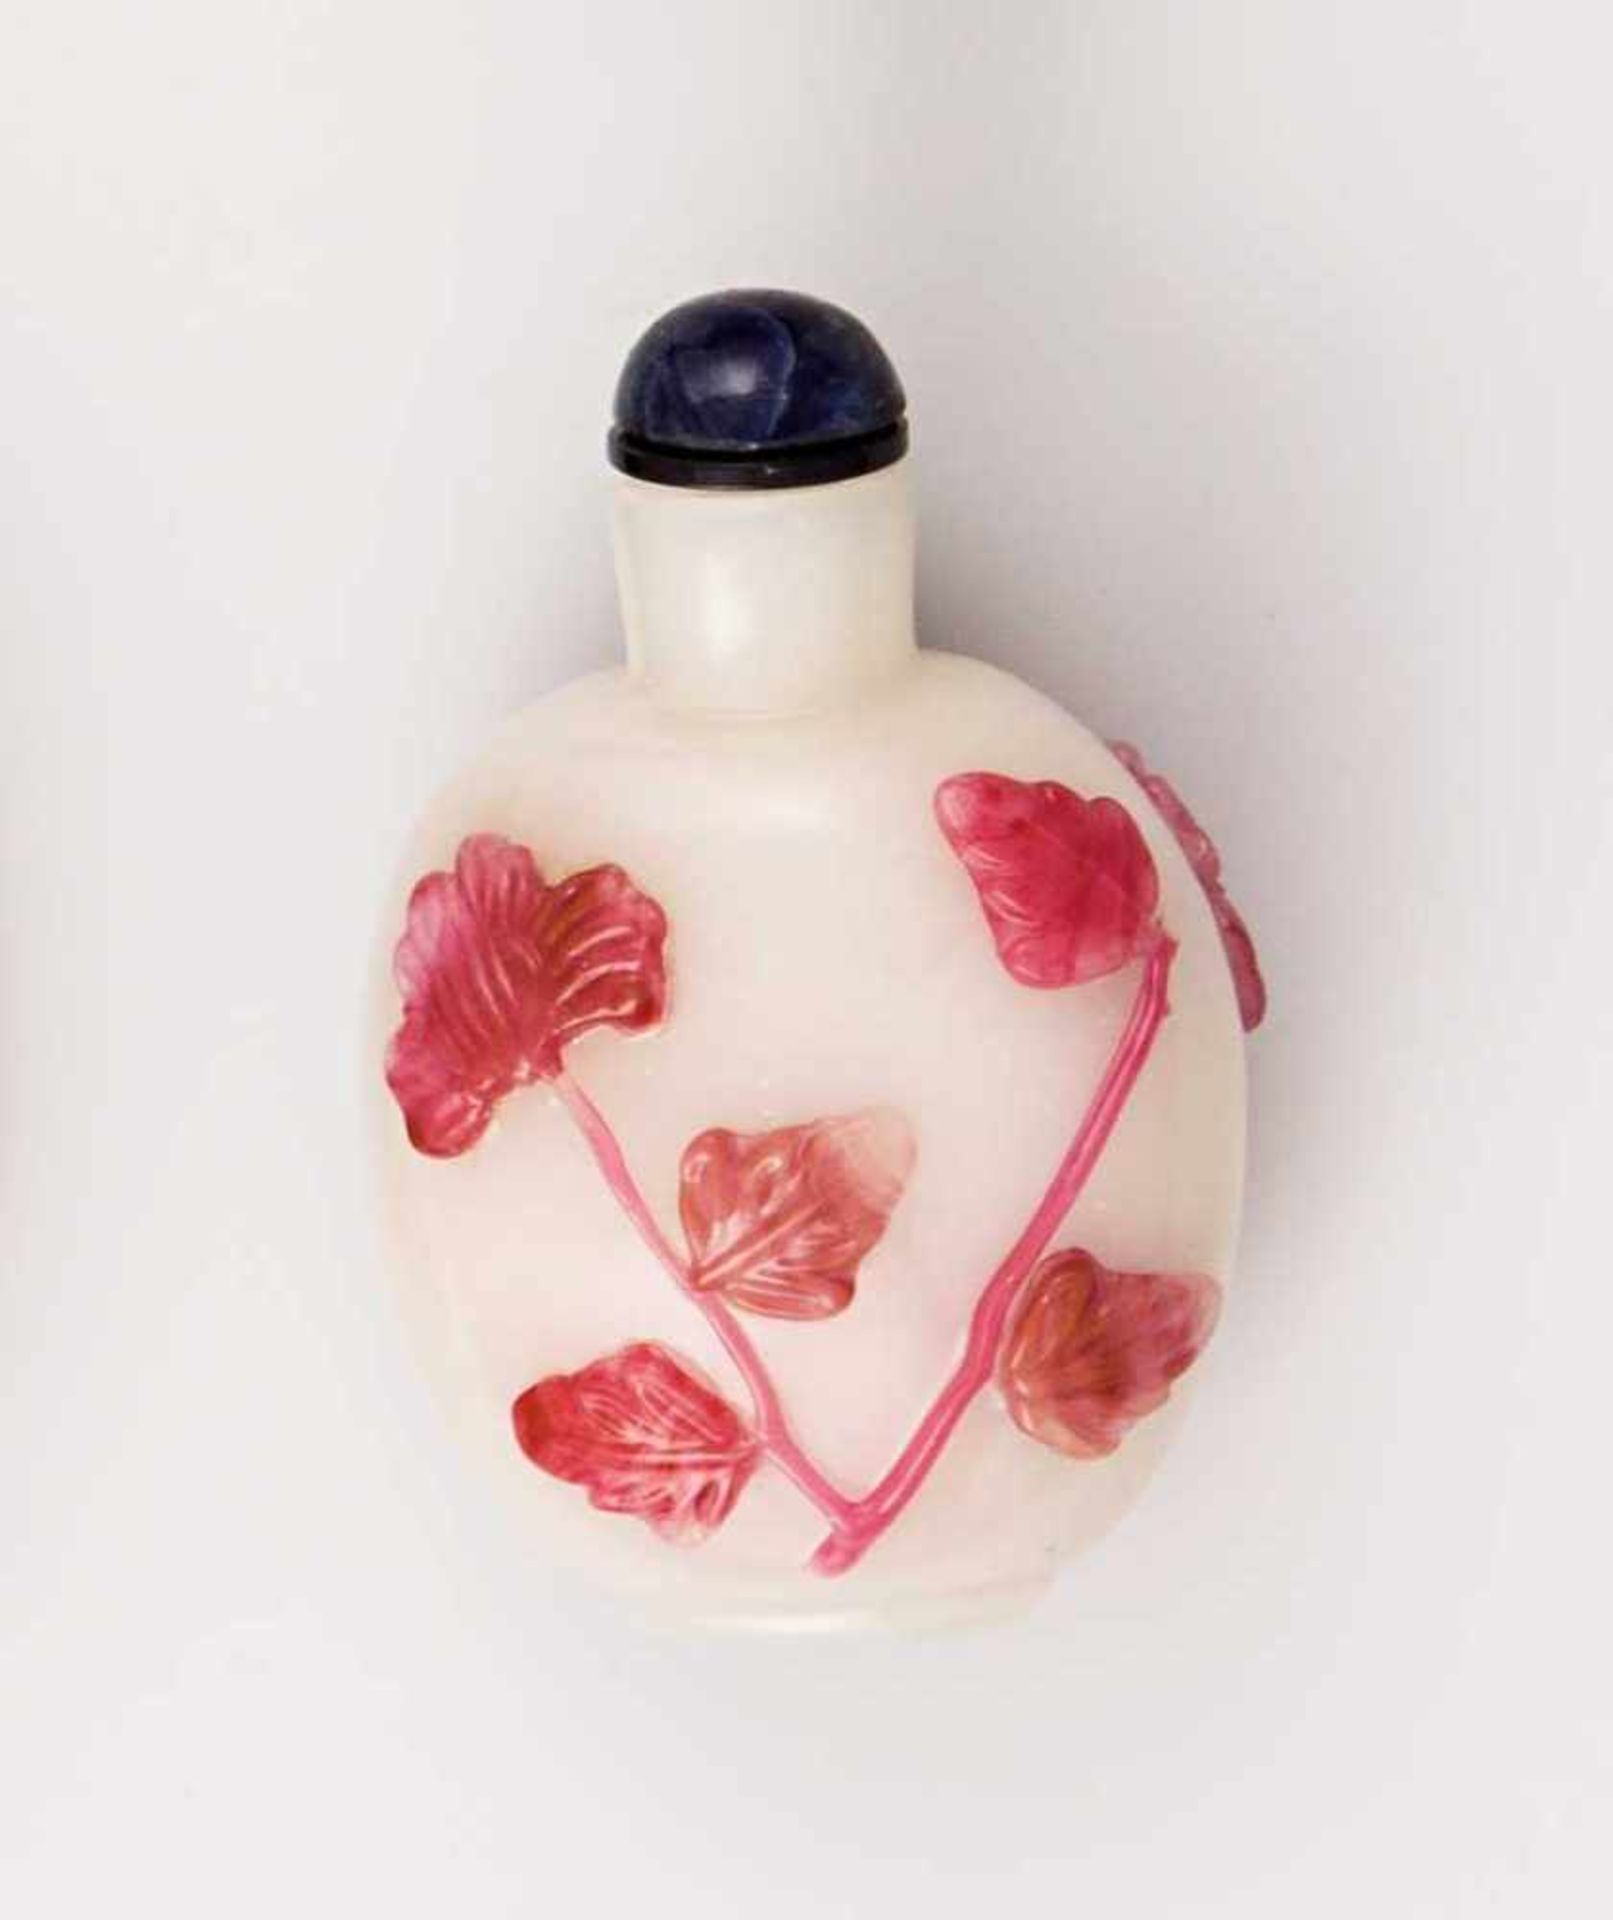 Snuffbottle. Weiße Glasflasche mit roséfarbenem Blütenrelief. China, wohl 18. Jh. H 7,5 cm